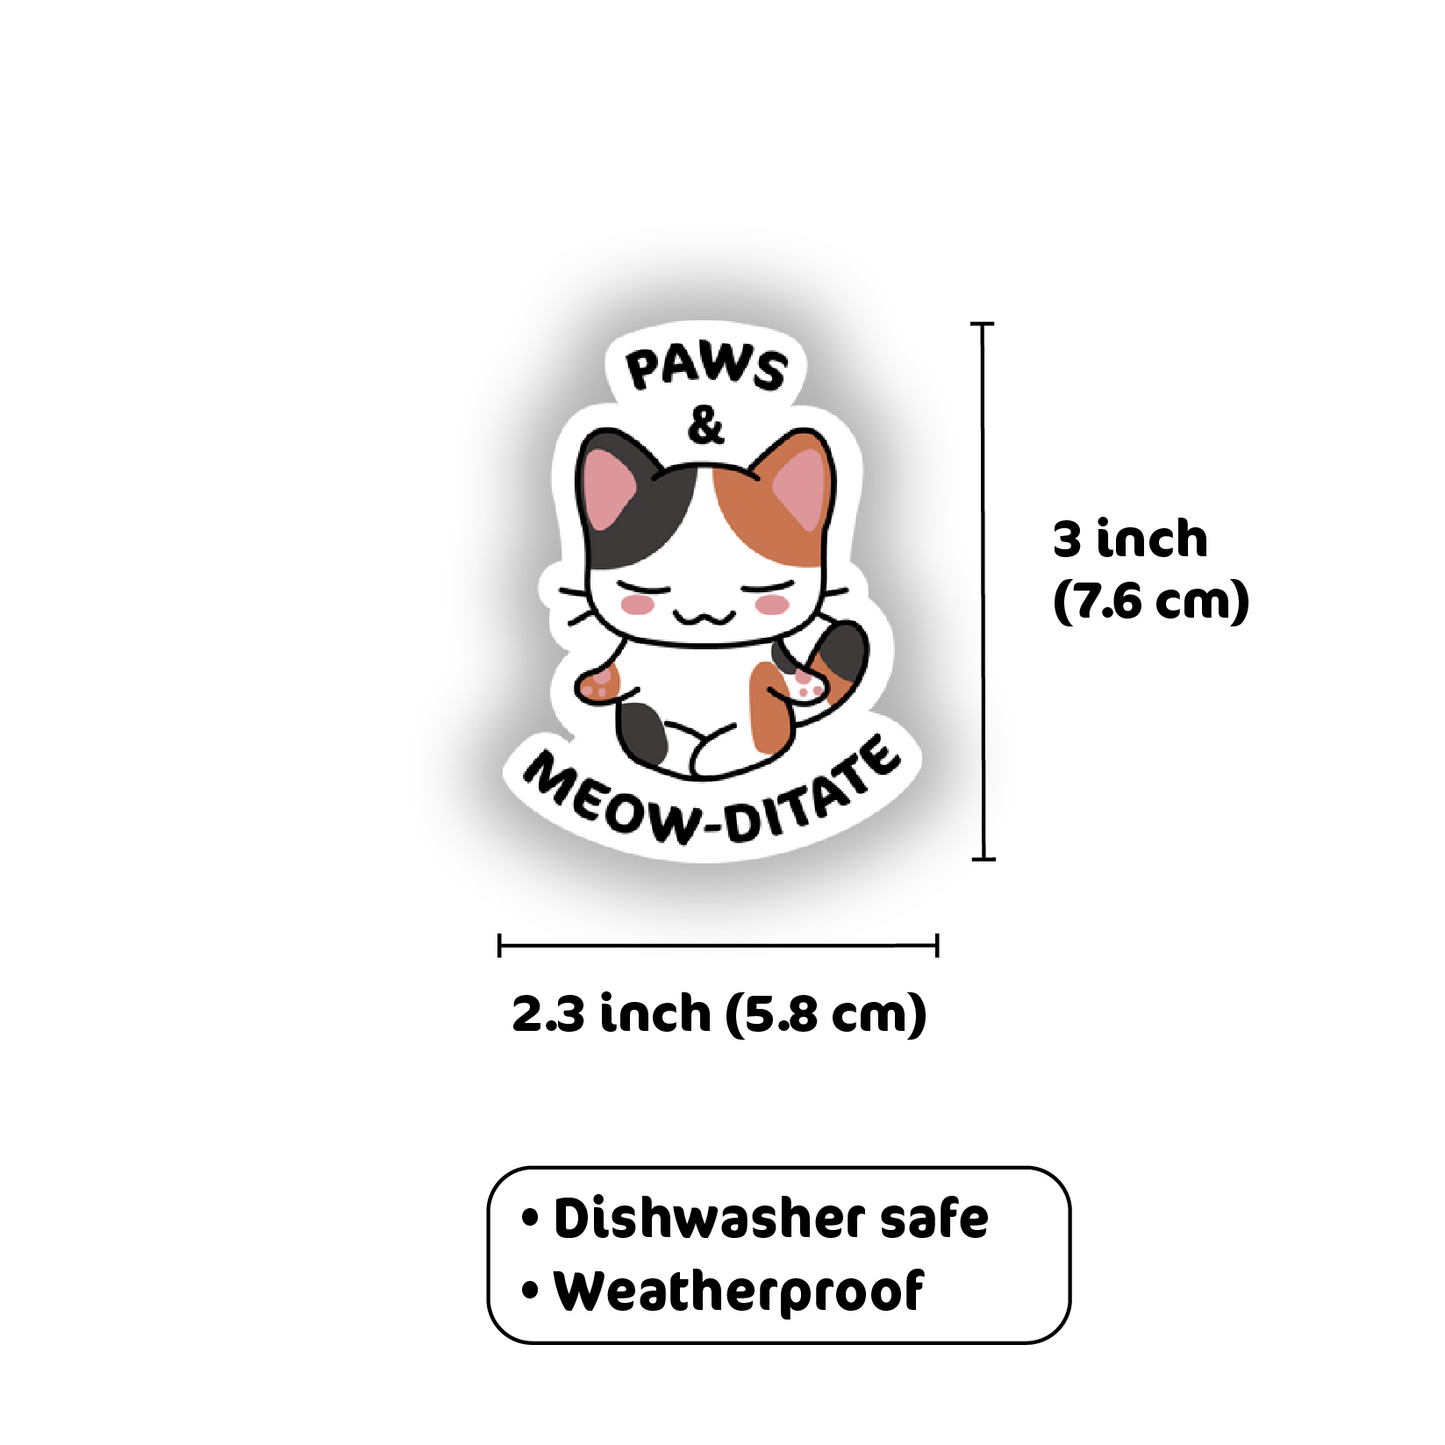 Paws & Meow-ditate Vinyl Sticker